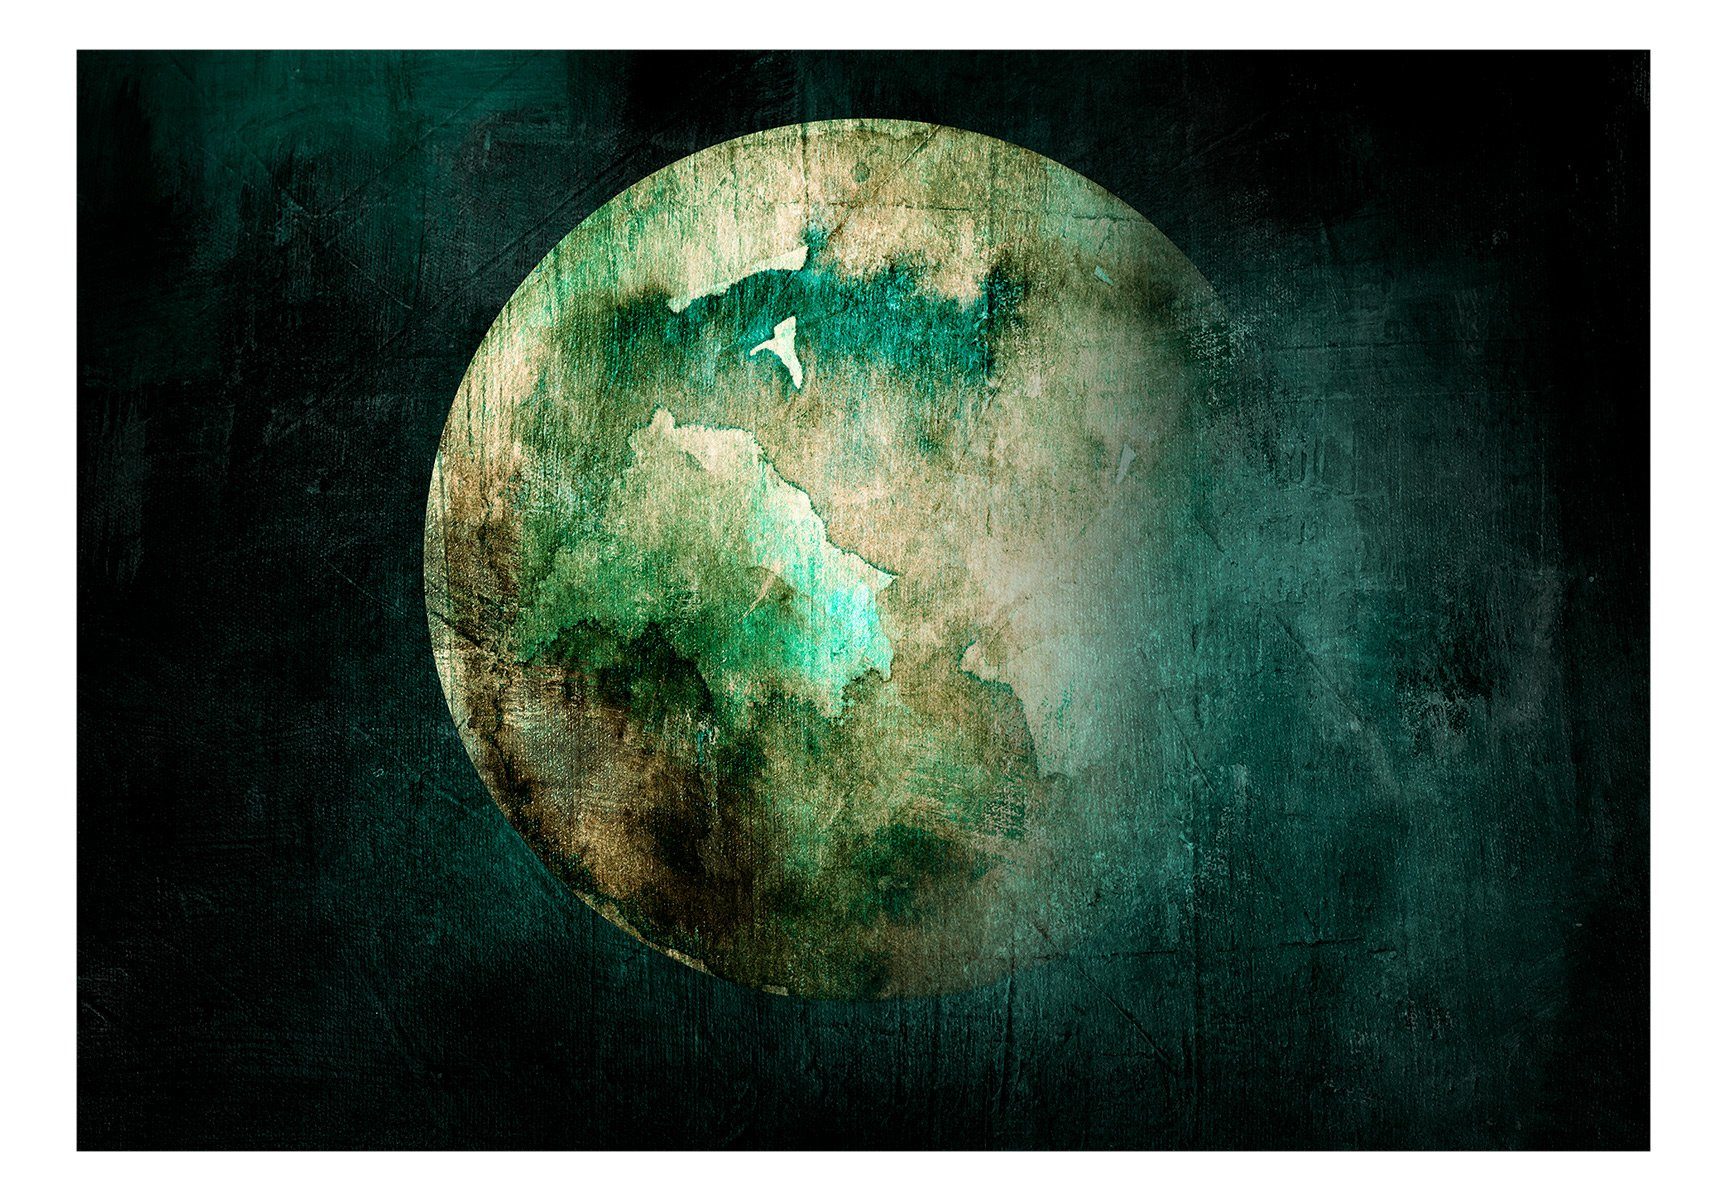 Pangea Design 1x0.7 m, Vliestapete Green halb-matt, Tapete KUNSTLOFT lichtbeständige